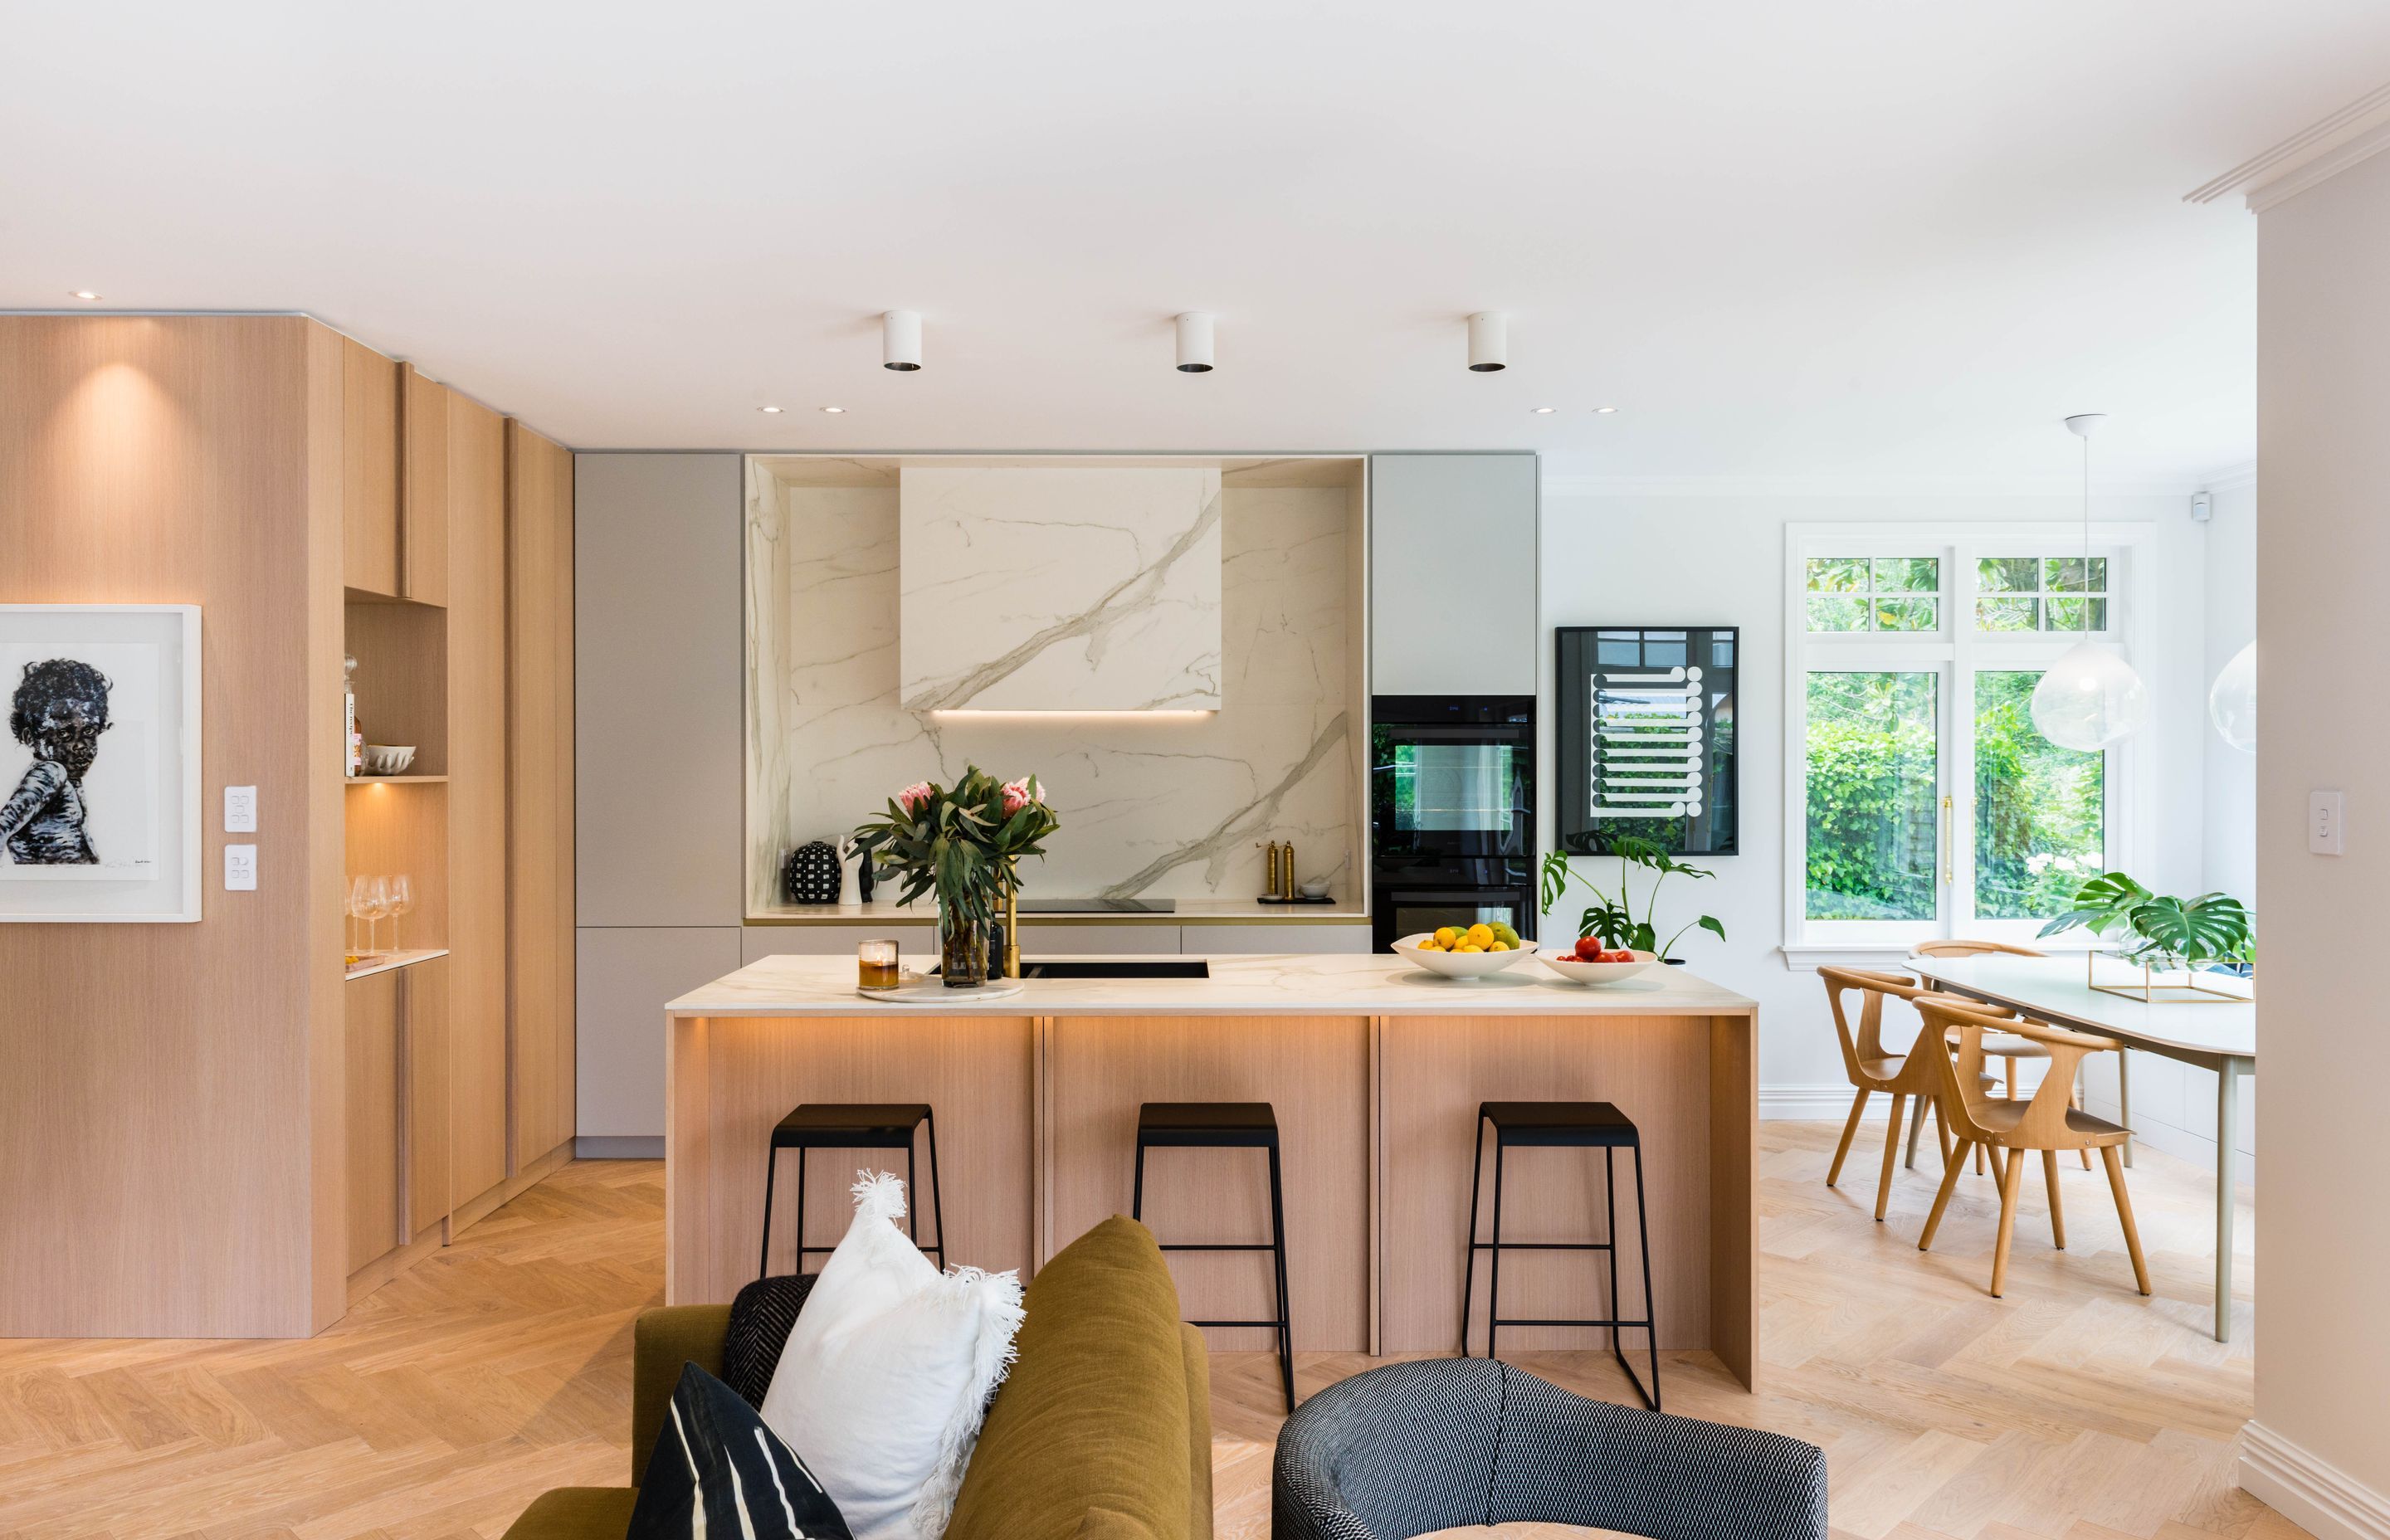 A design-led kitchen appliance range focused on affordability